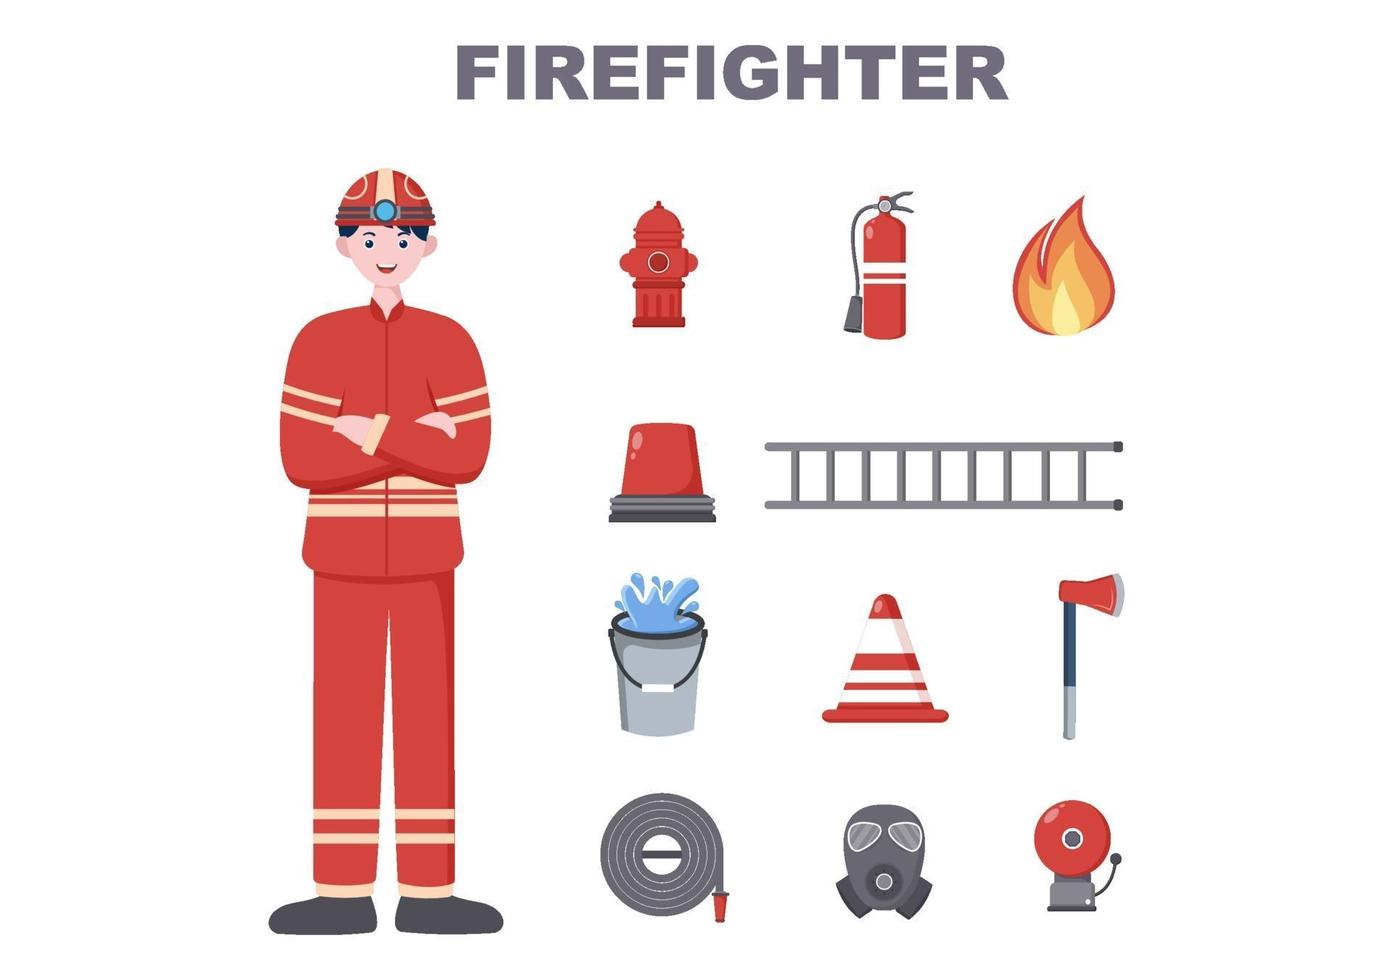 brandweerlieden met huisbrandweerwagens, mensen en dieren helpen, reddingsapparatuur in verschillende situaties gebruiken. vector illustratie